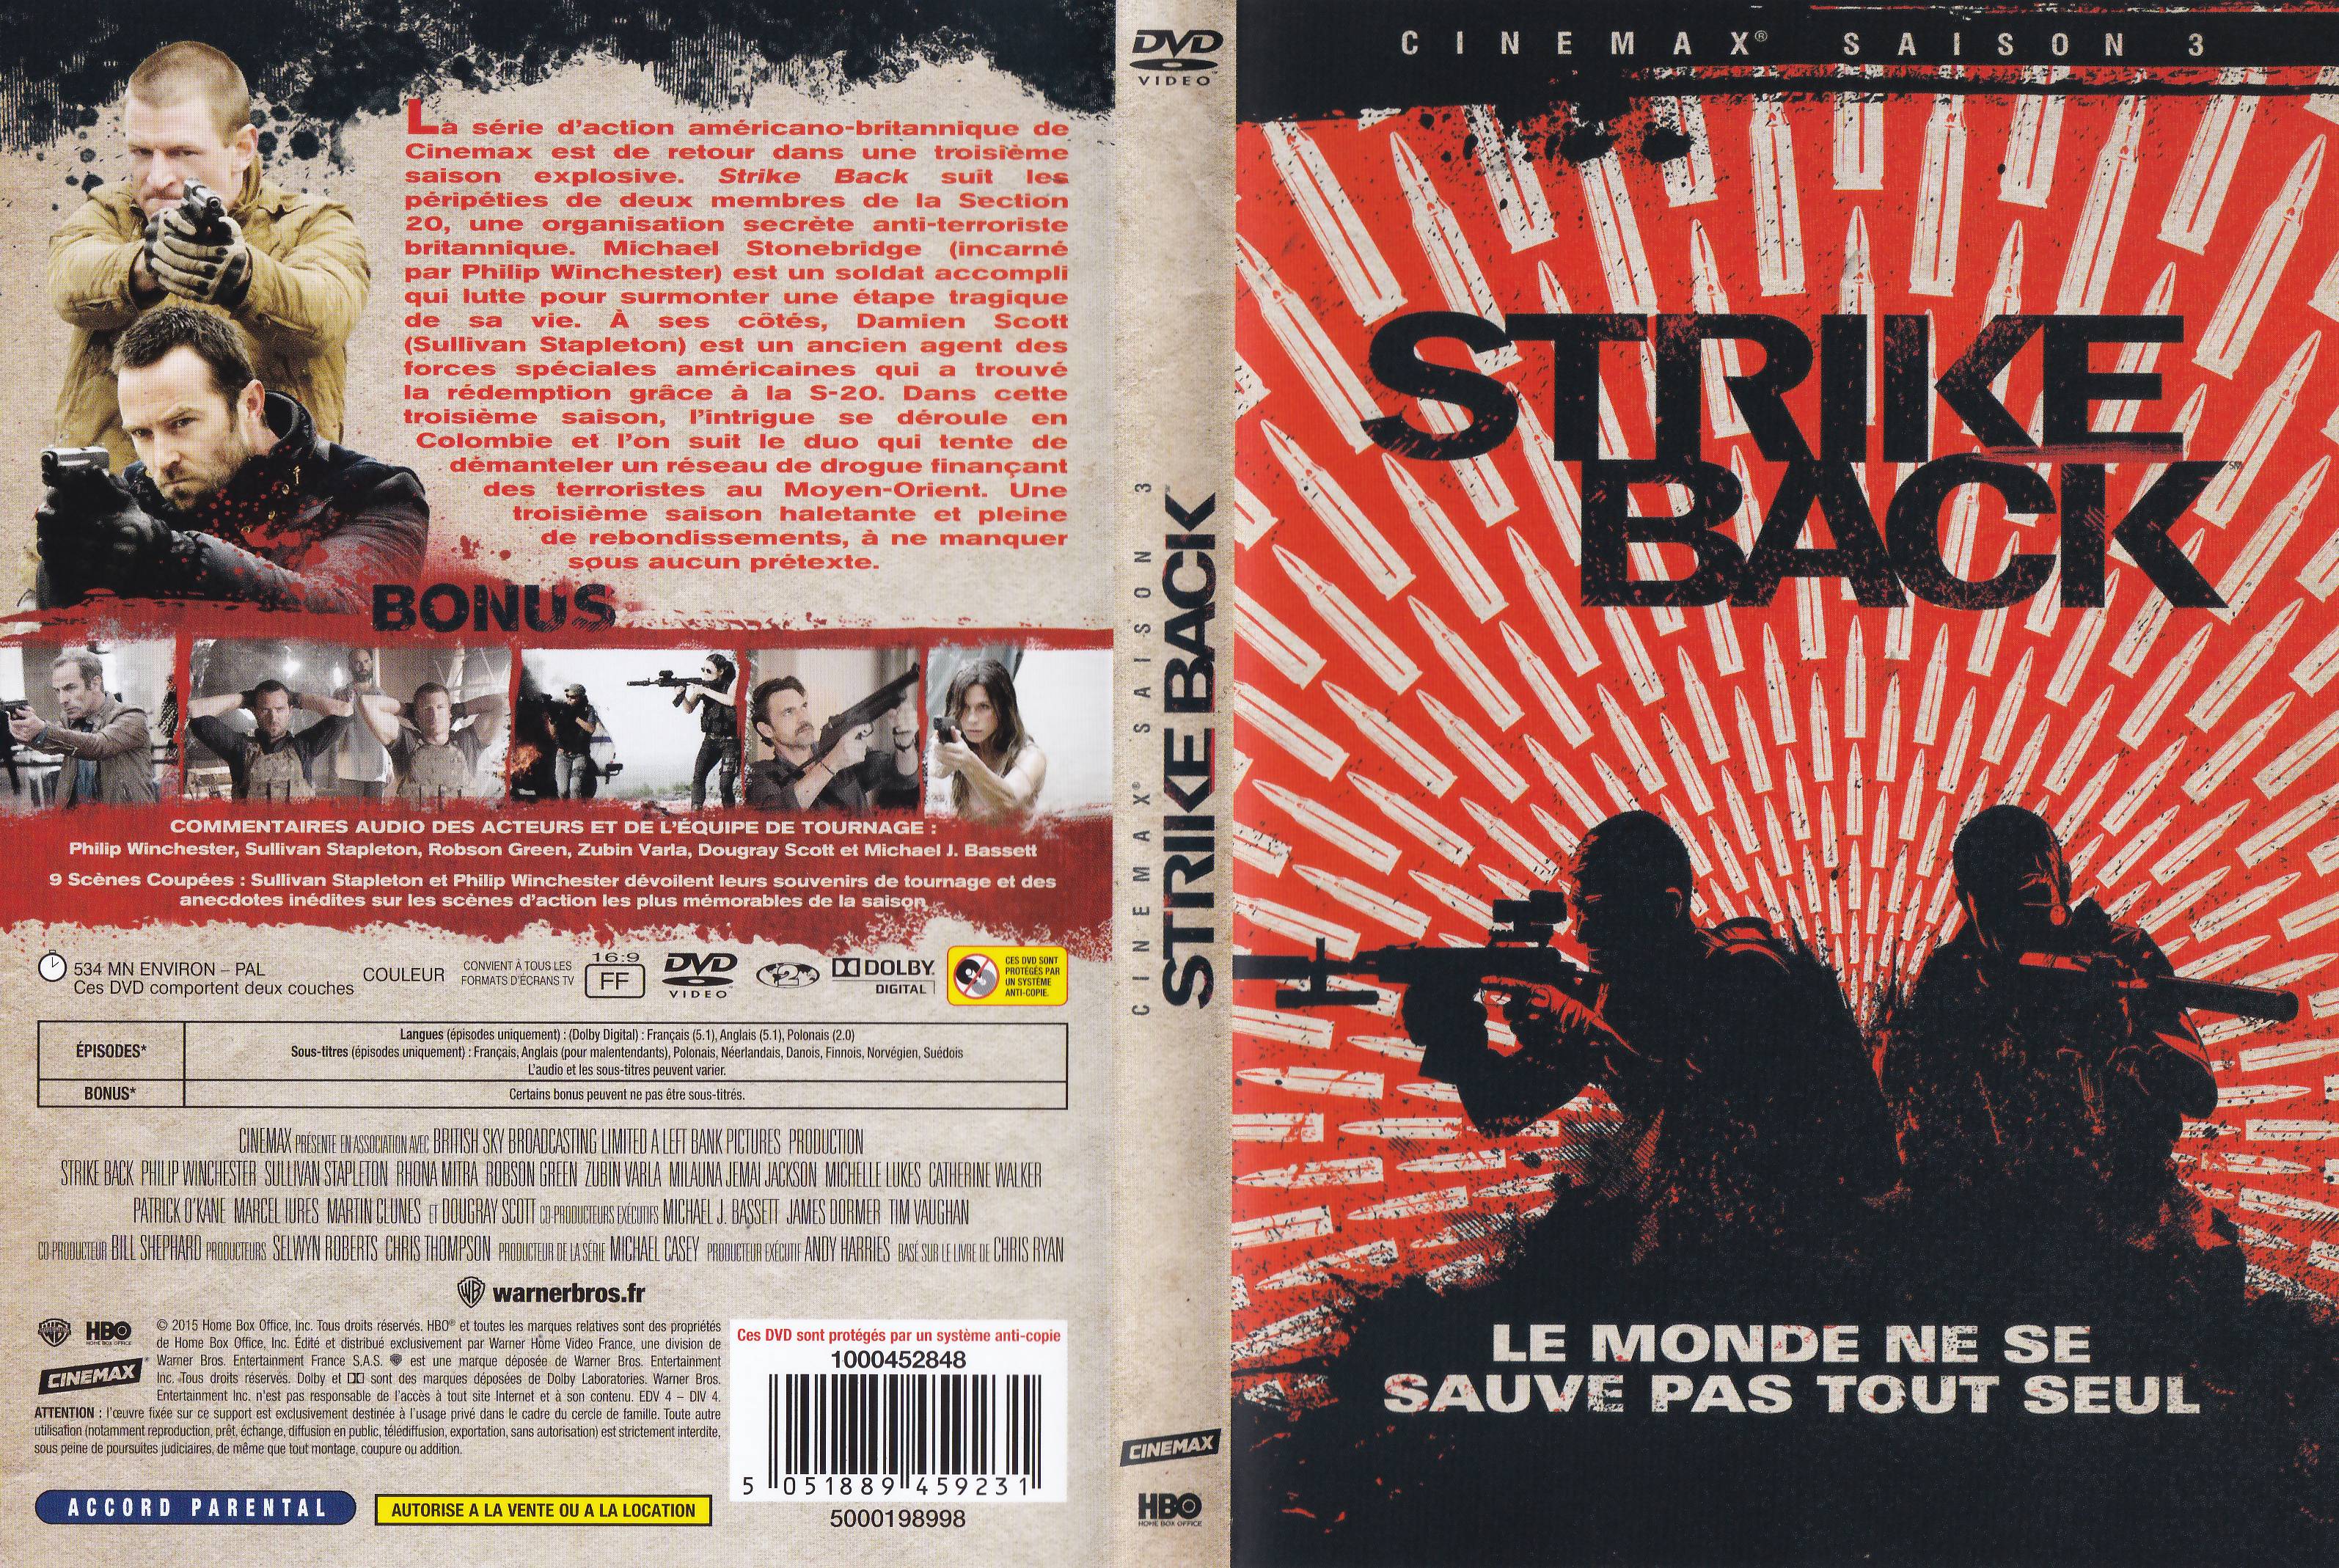 Jaquette DVD Strike Back saison 3 